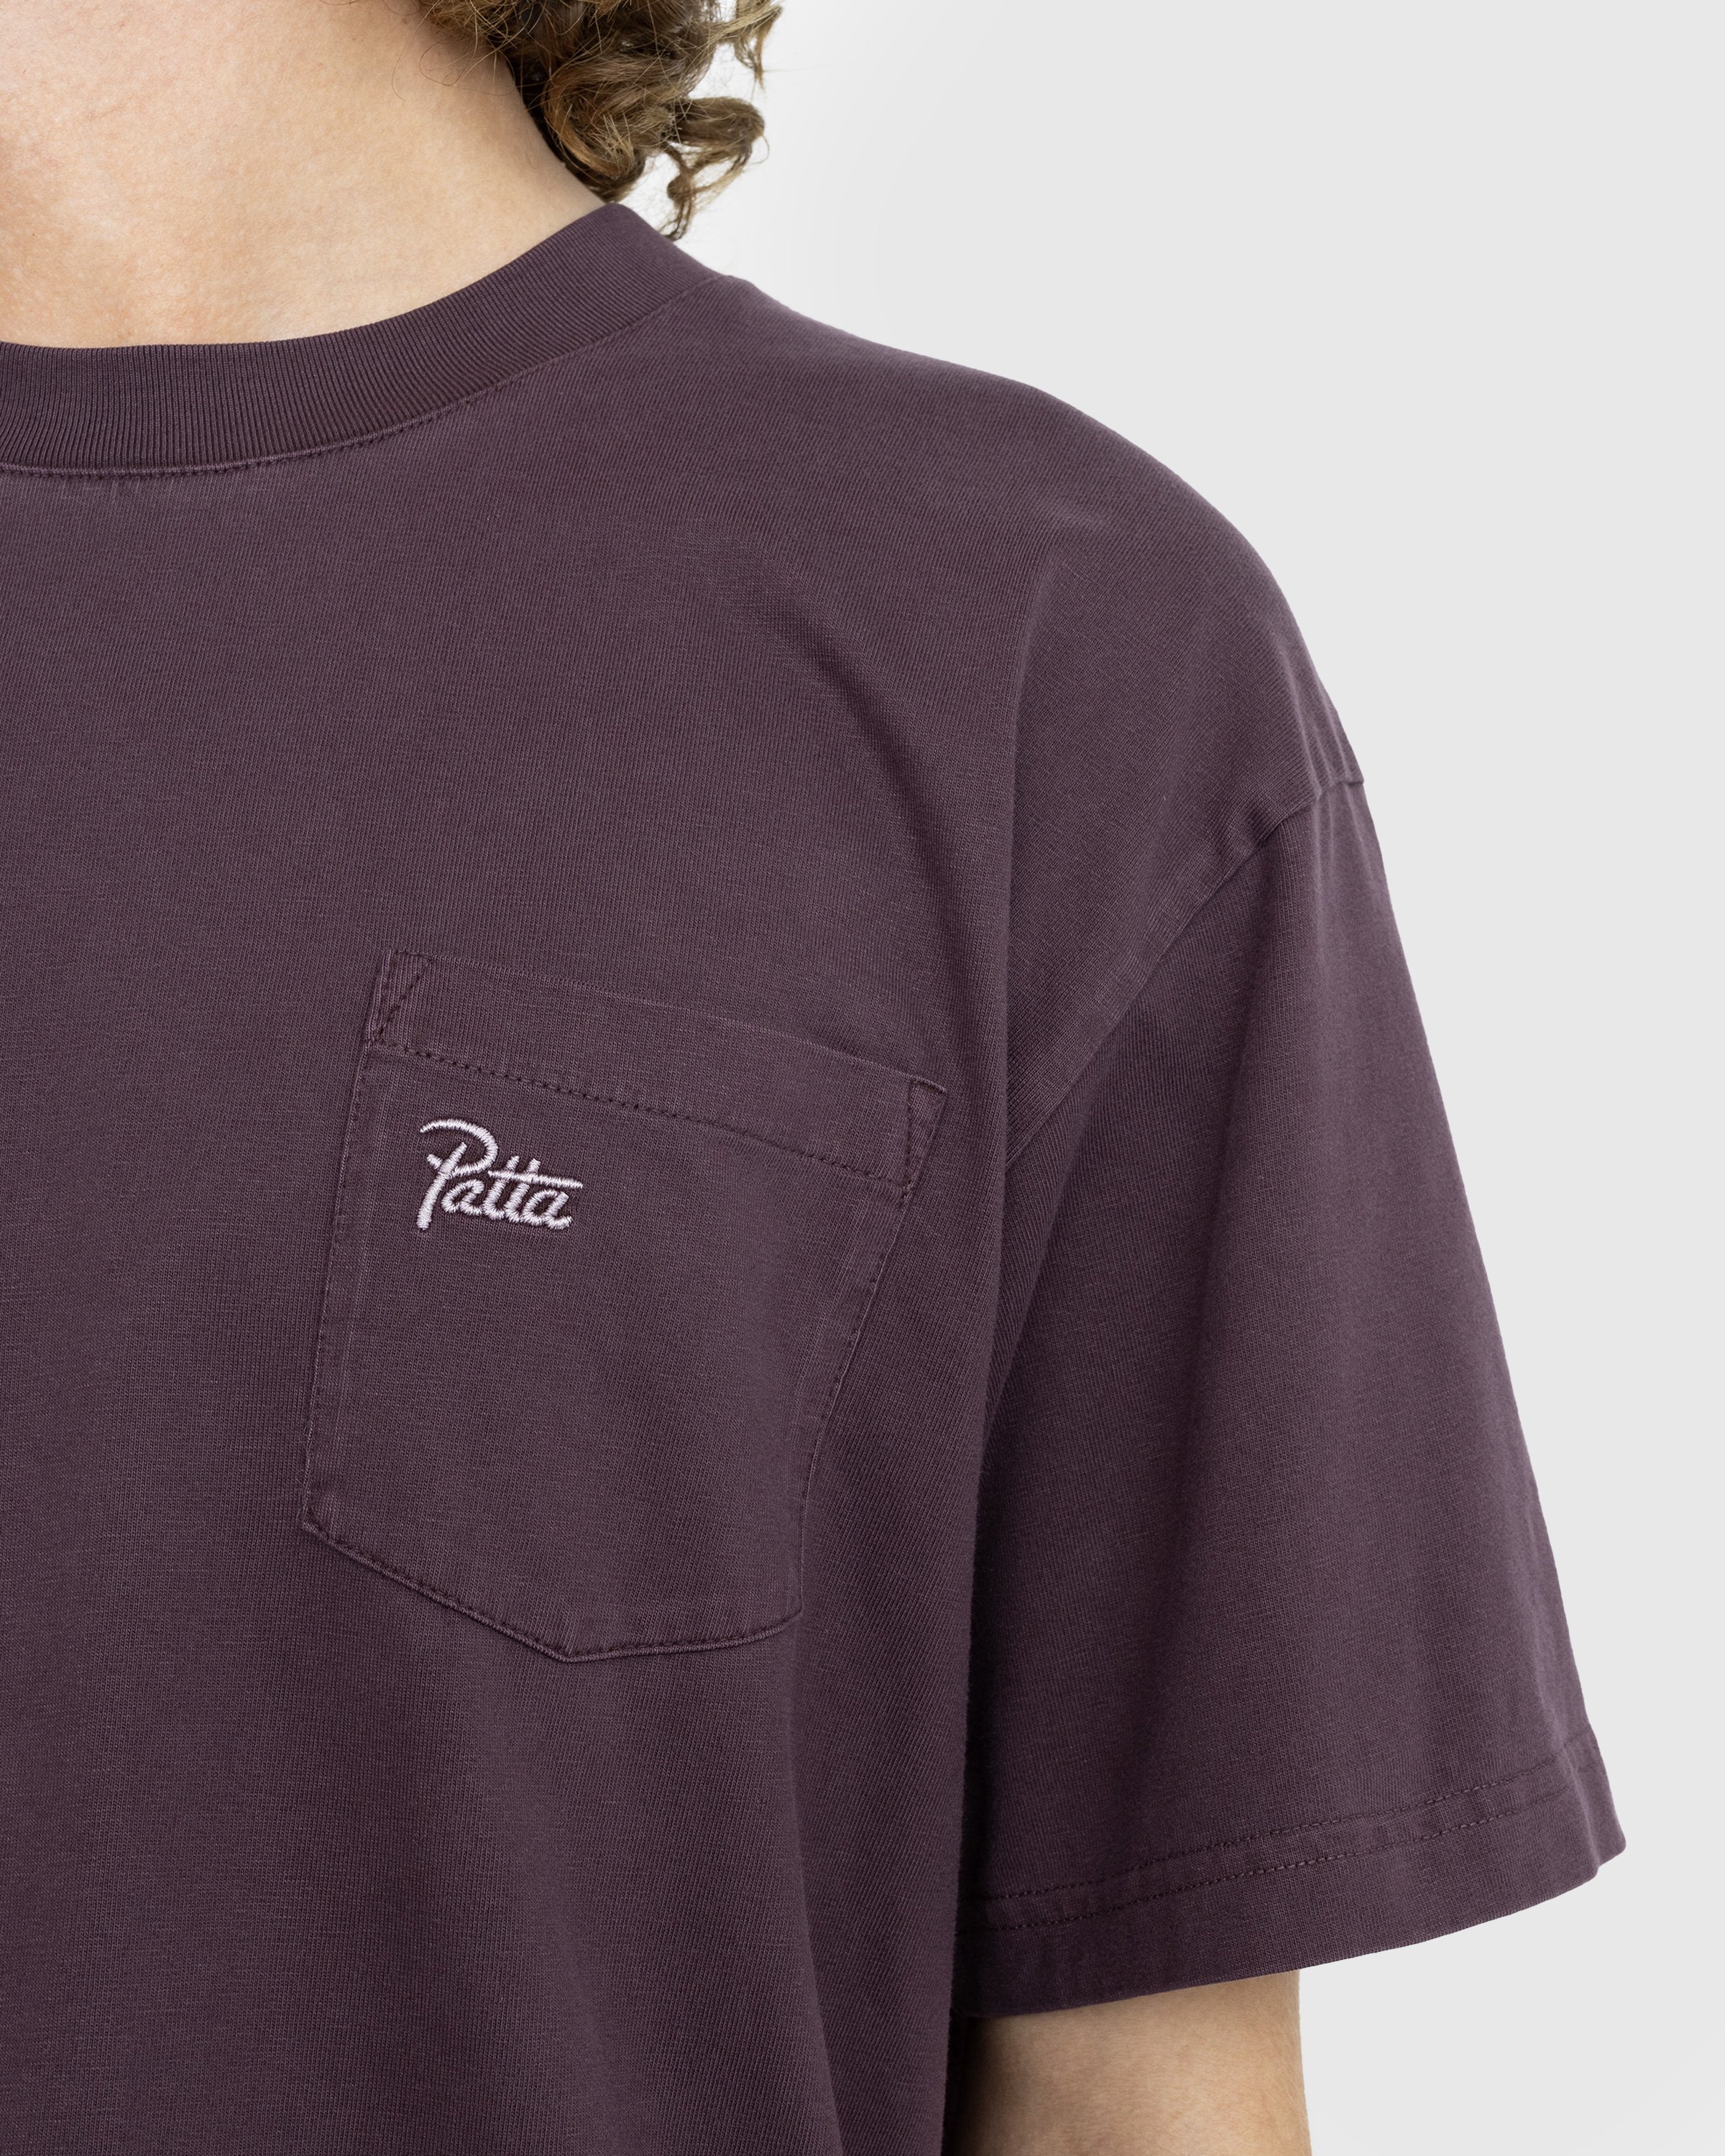 Patta - Basic Washed Pocket T-Shirt Plum Perfect - Clothing - Purple - Image 4